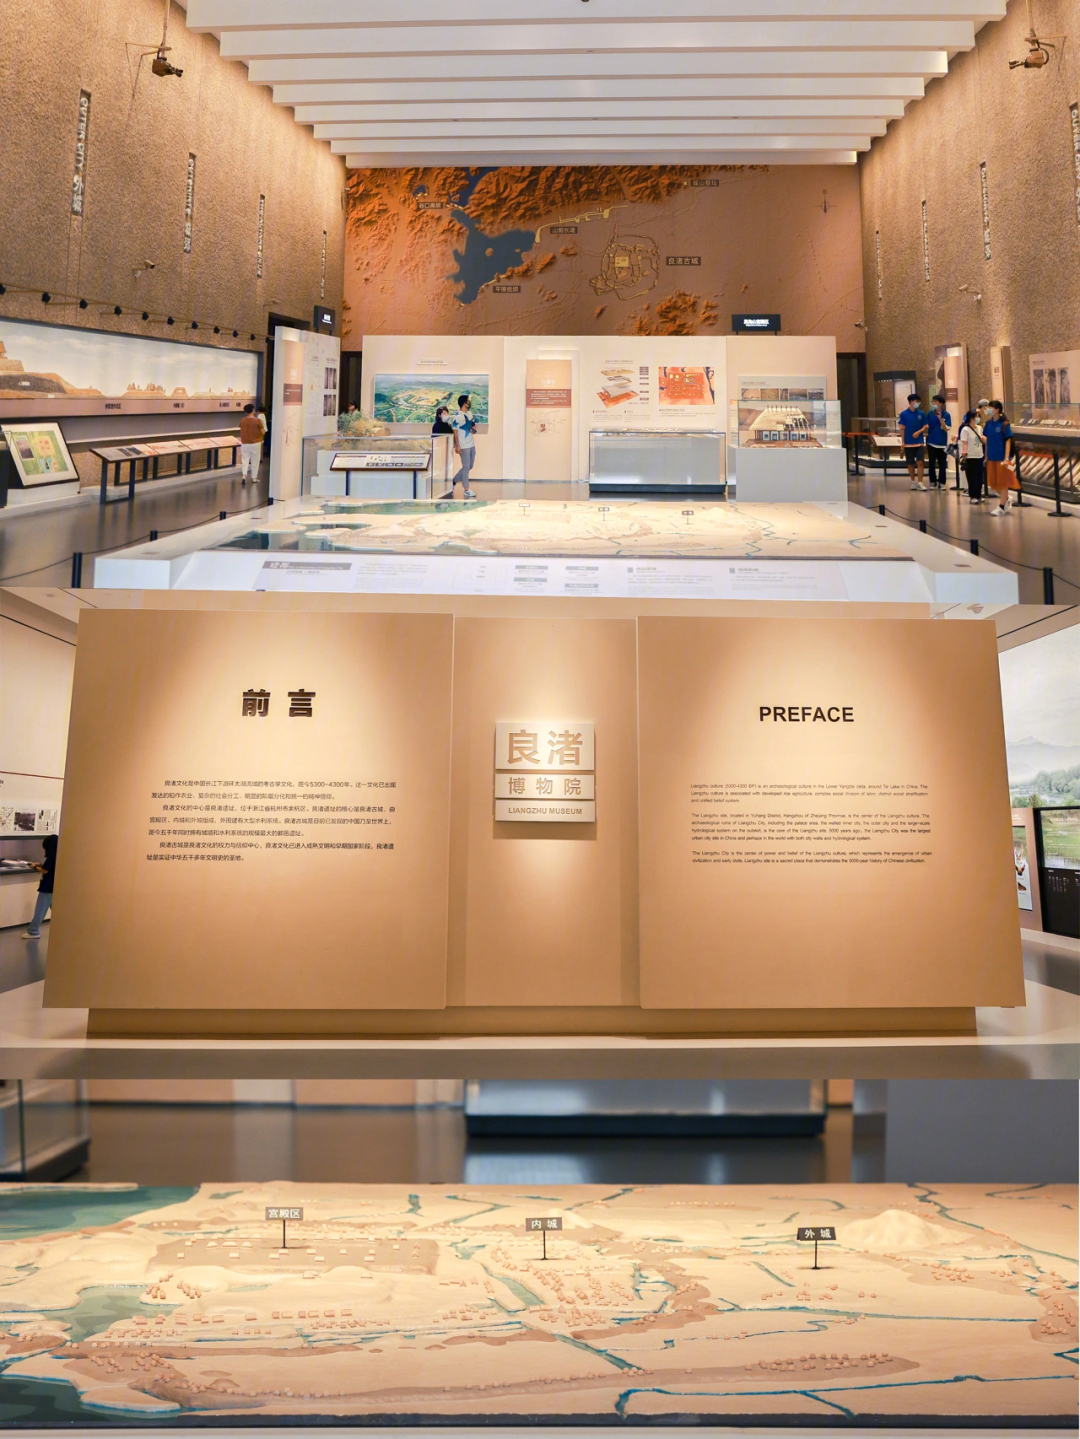 良渚博物院预约图片